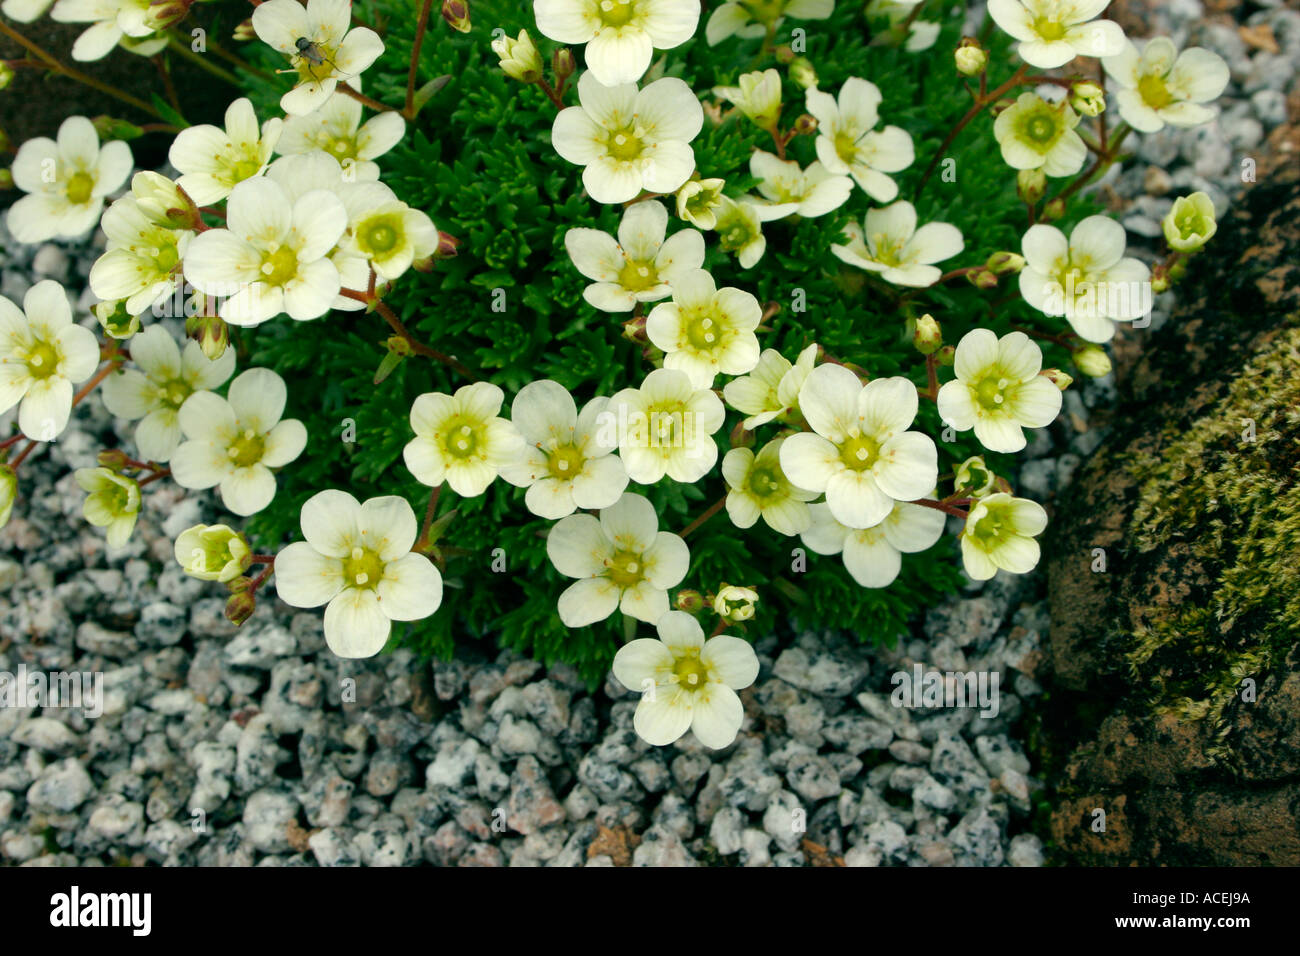 Saxifraga x arendsii Flowers of Sulphur Common name Saxifrage Stock Photo